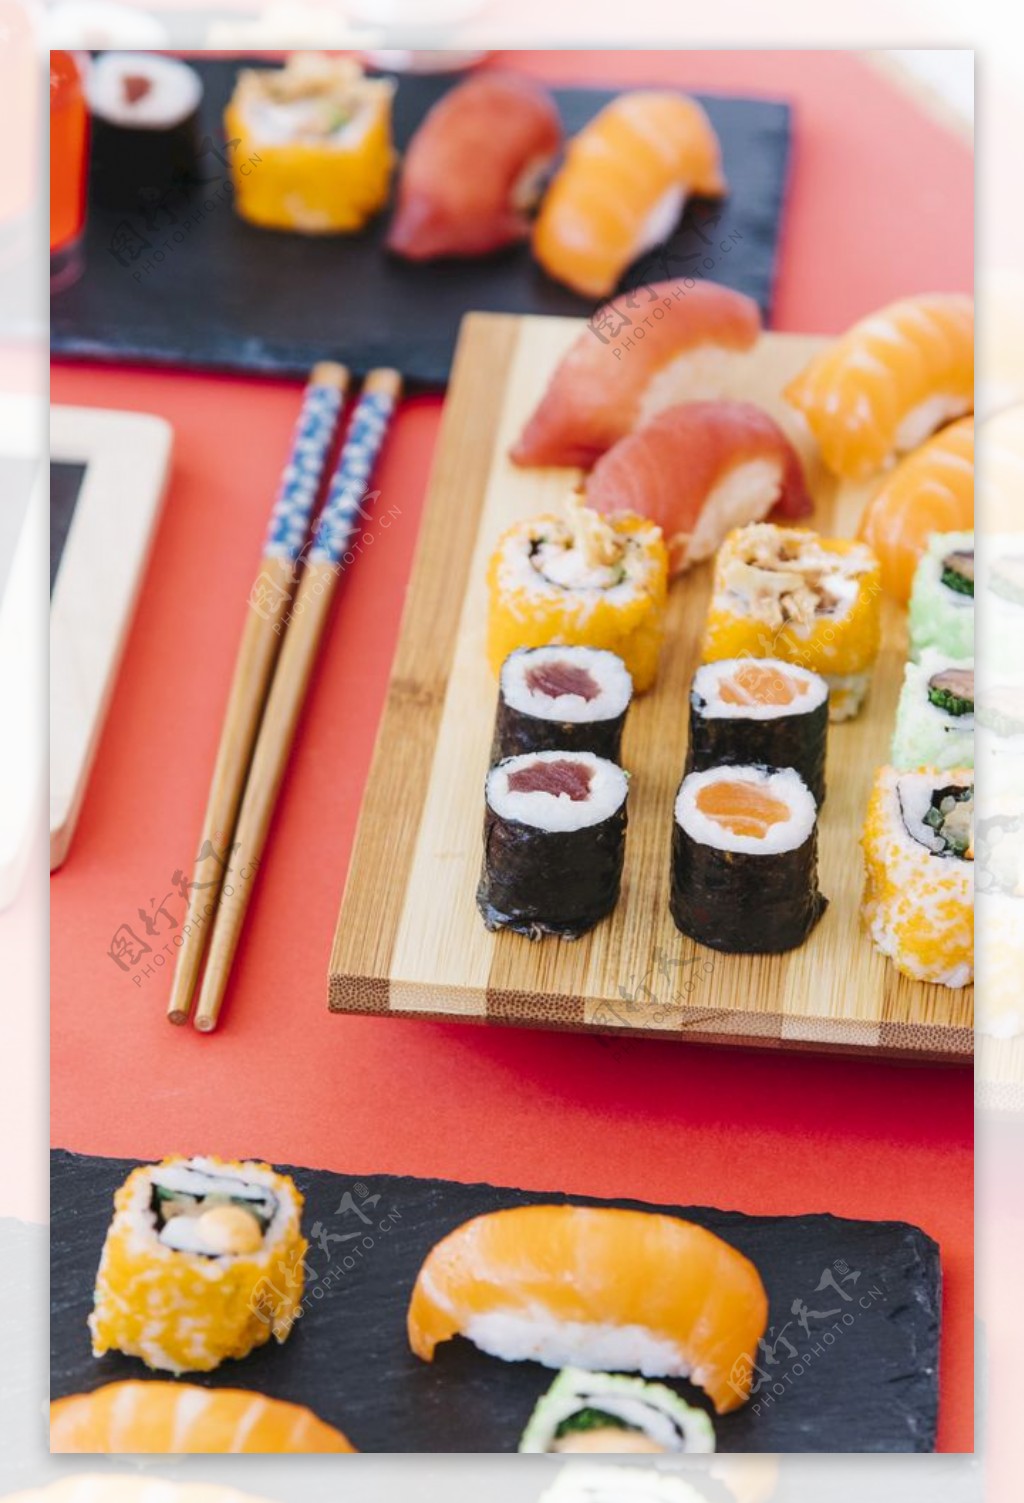 寿司美食展示